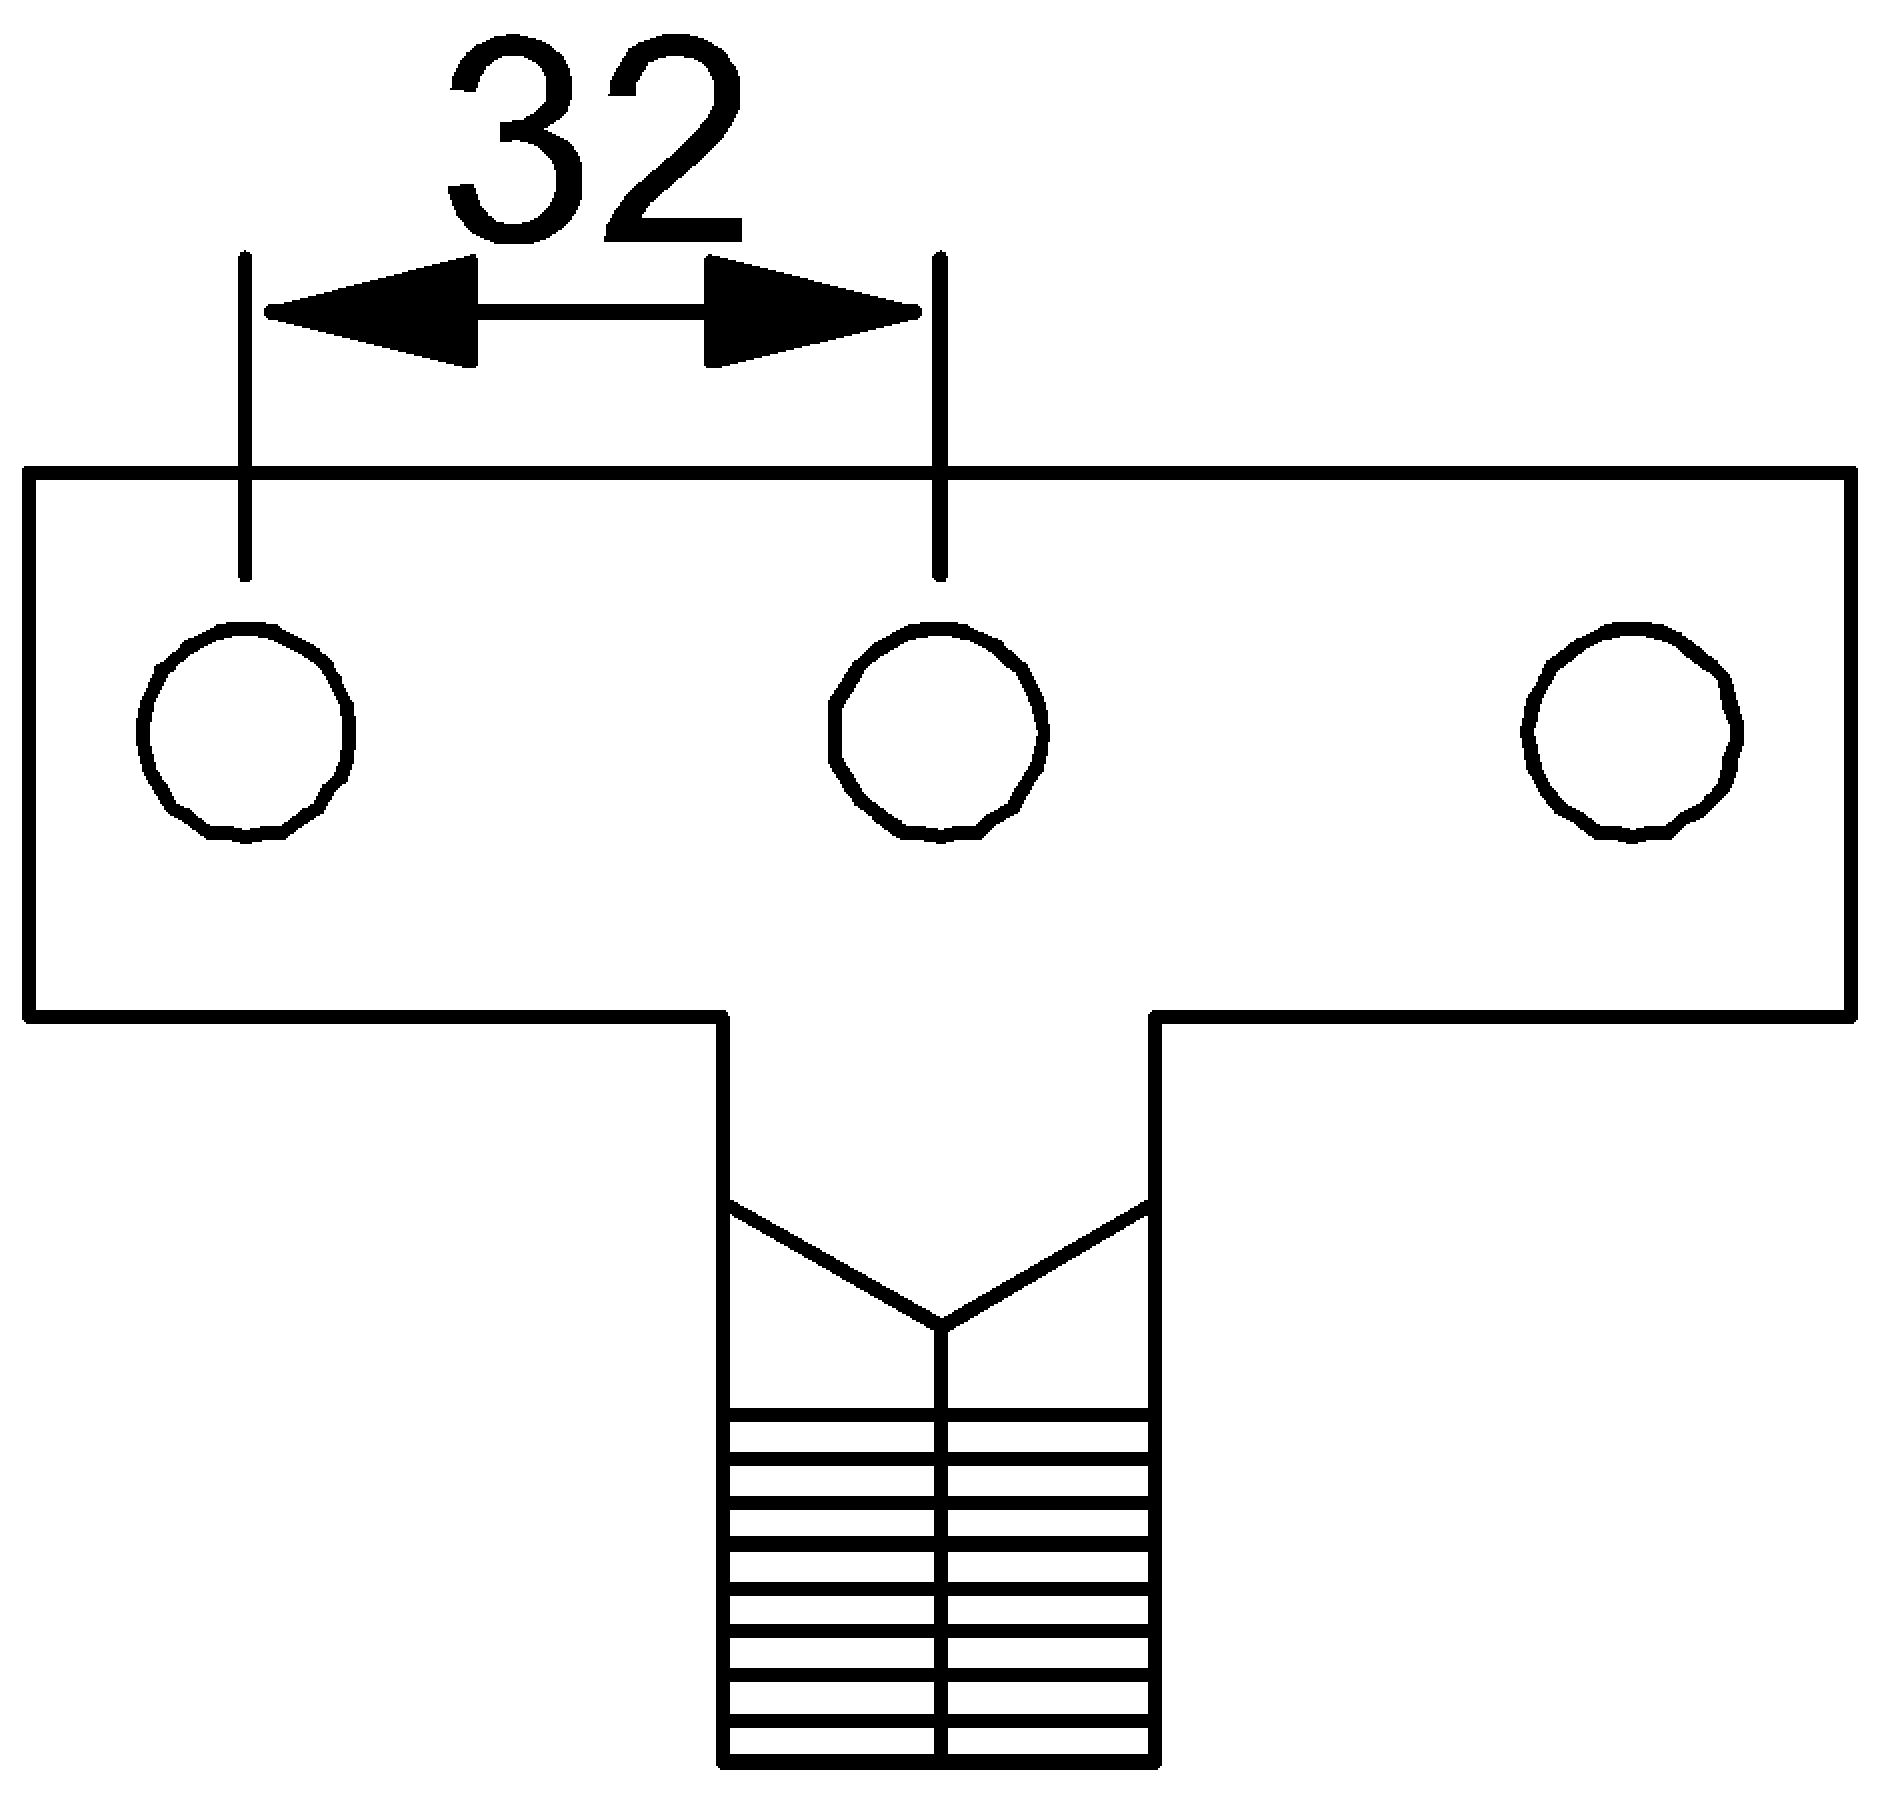 VB-1×50/3 V-Anschlussbrücke